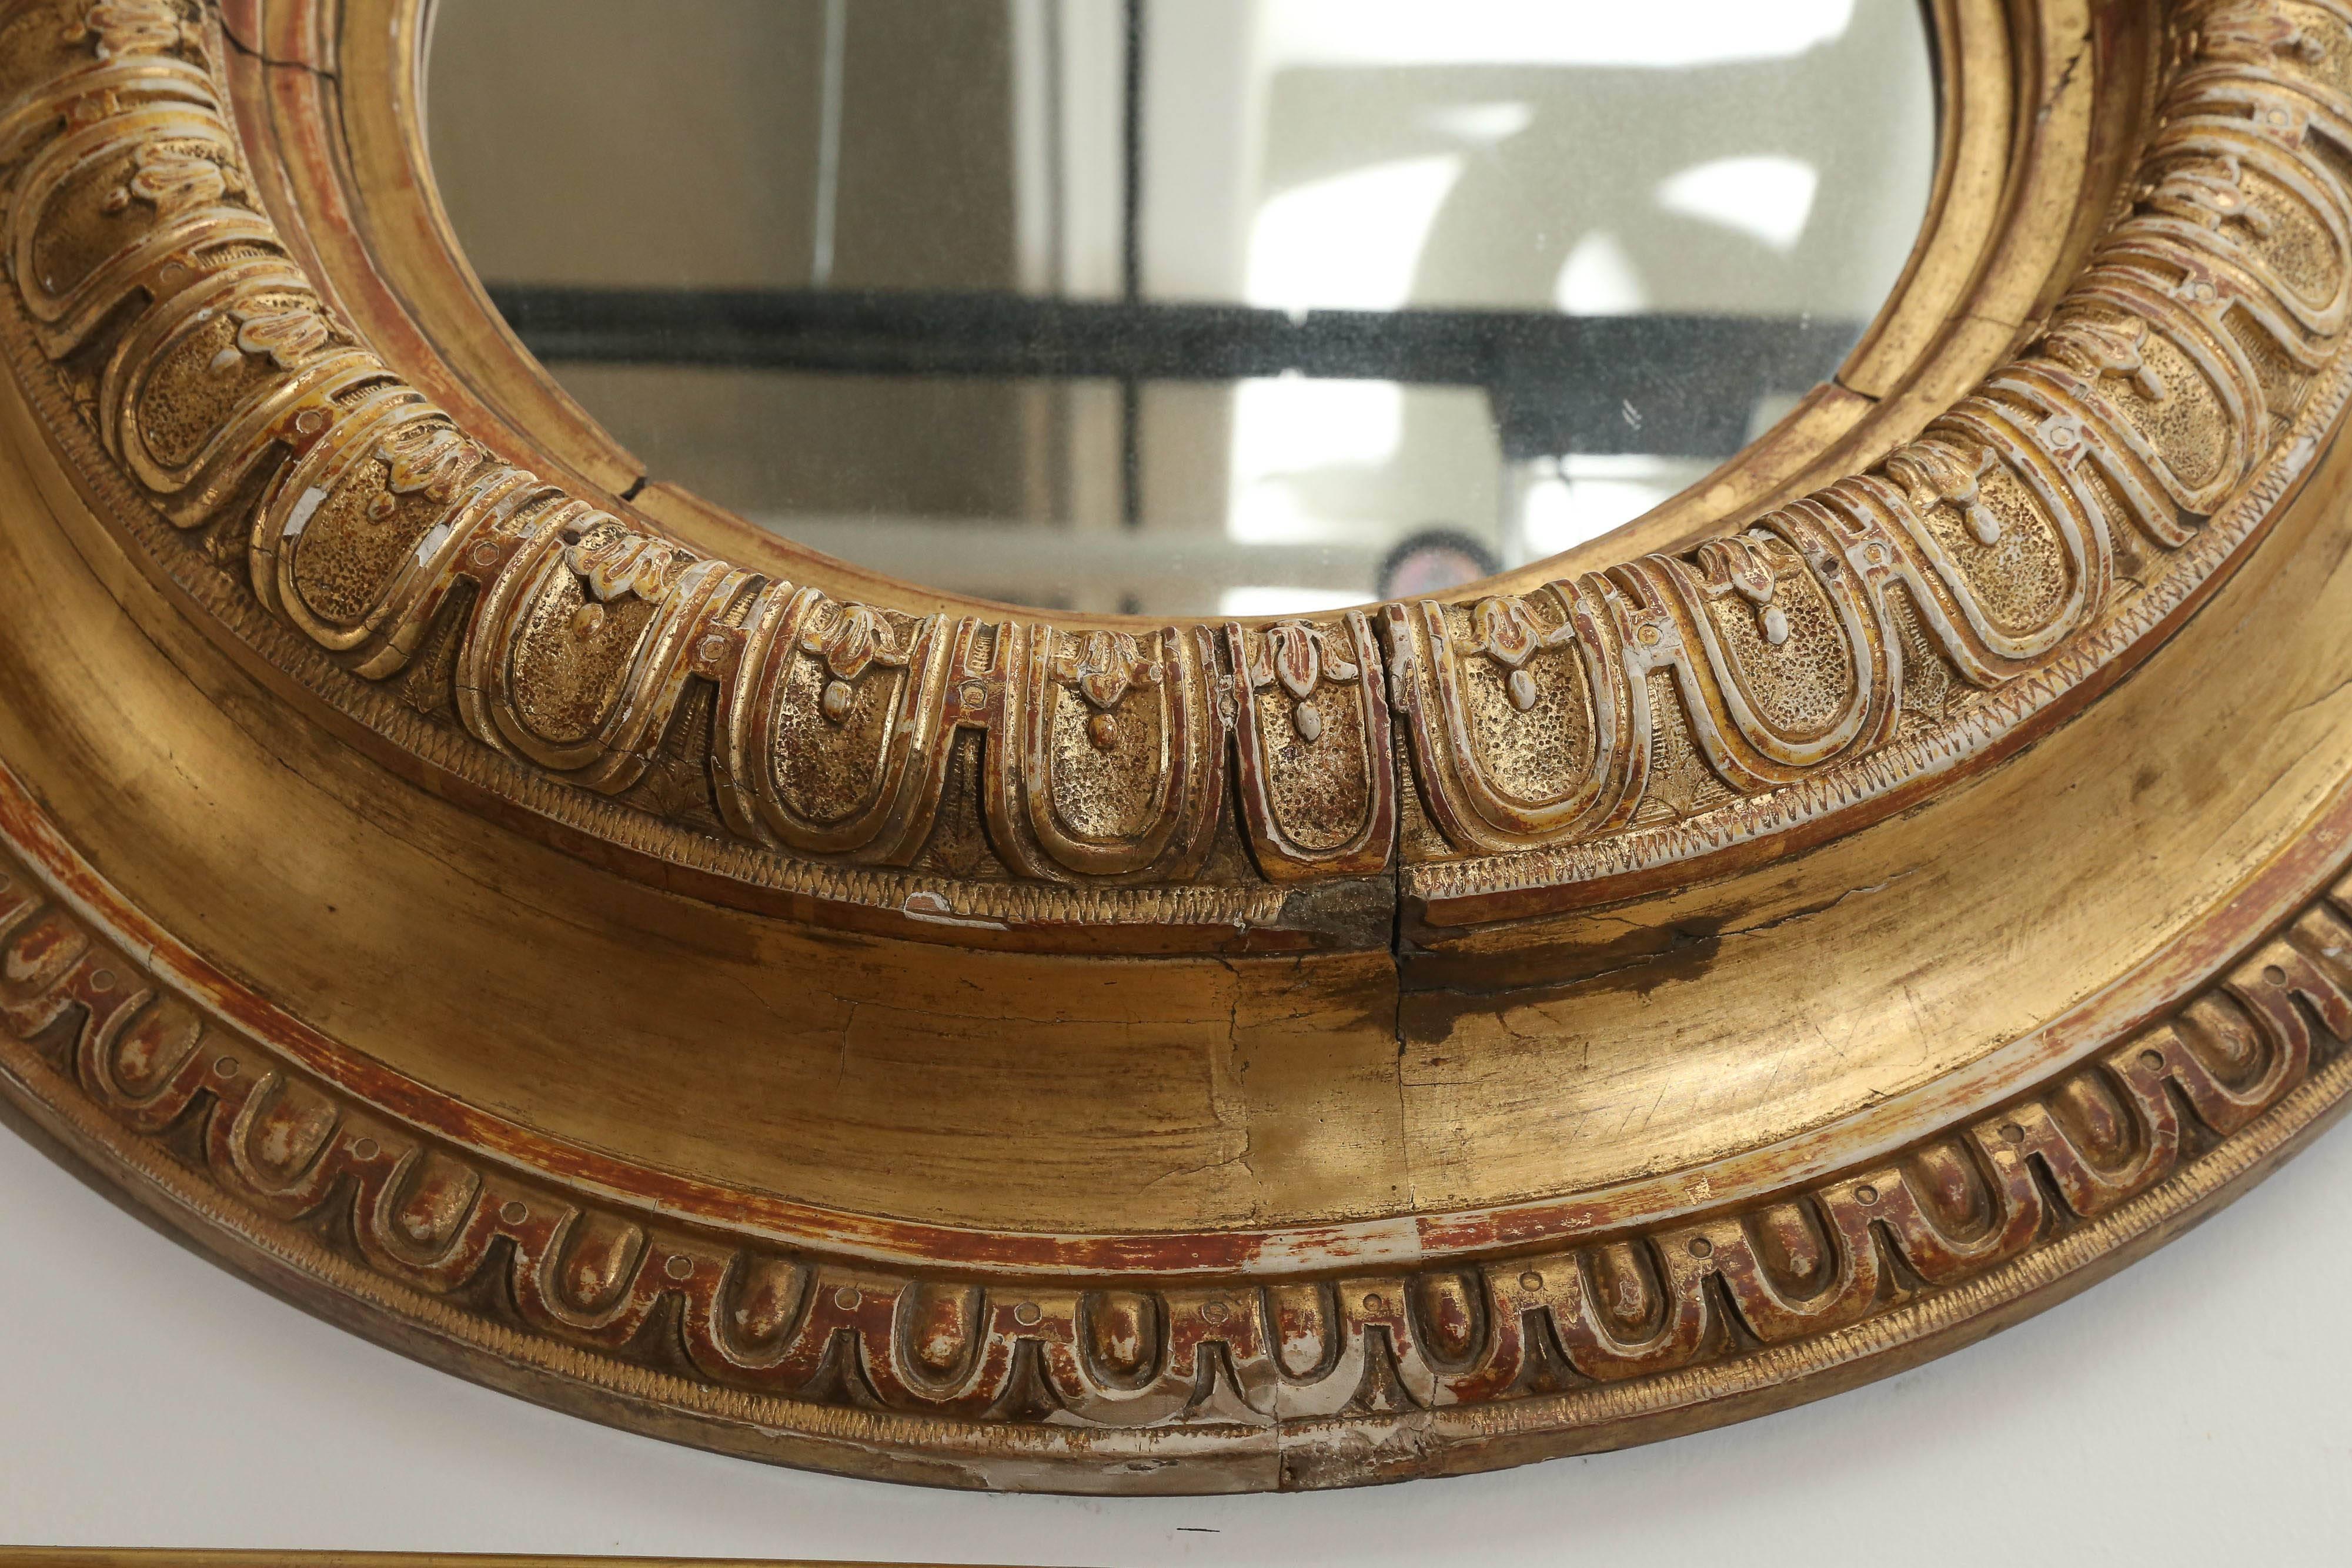 Fantastique miroir rond doré du 18ème siècle. Quelques pertes au niveau des détails mais cela ne nuit pas. Magnifique dorure et détails partout. Verre de mercure original.  Grande sensation tridimensionnelle.